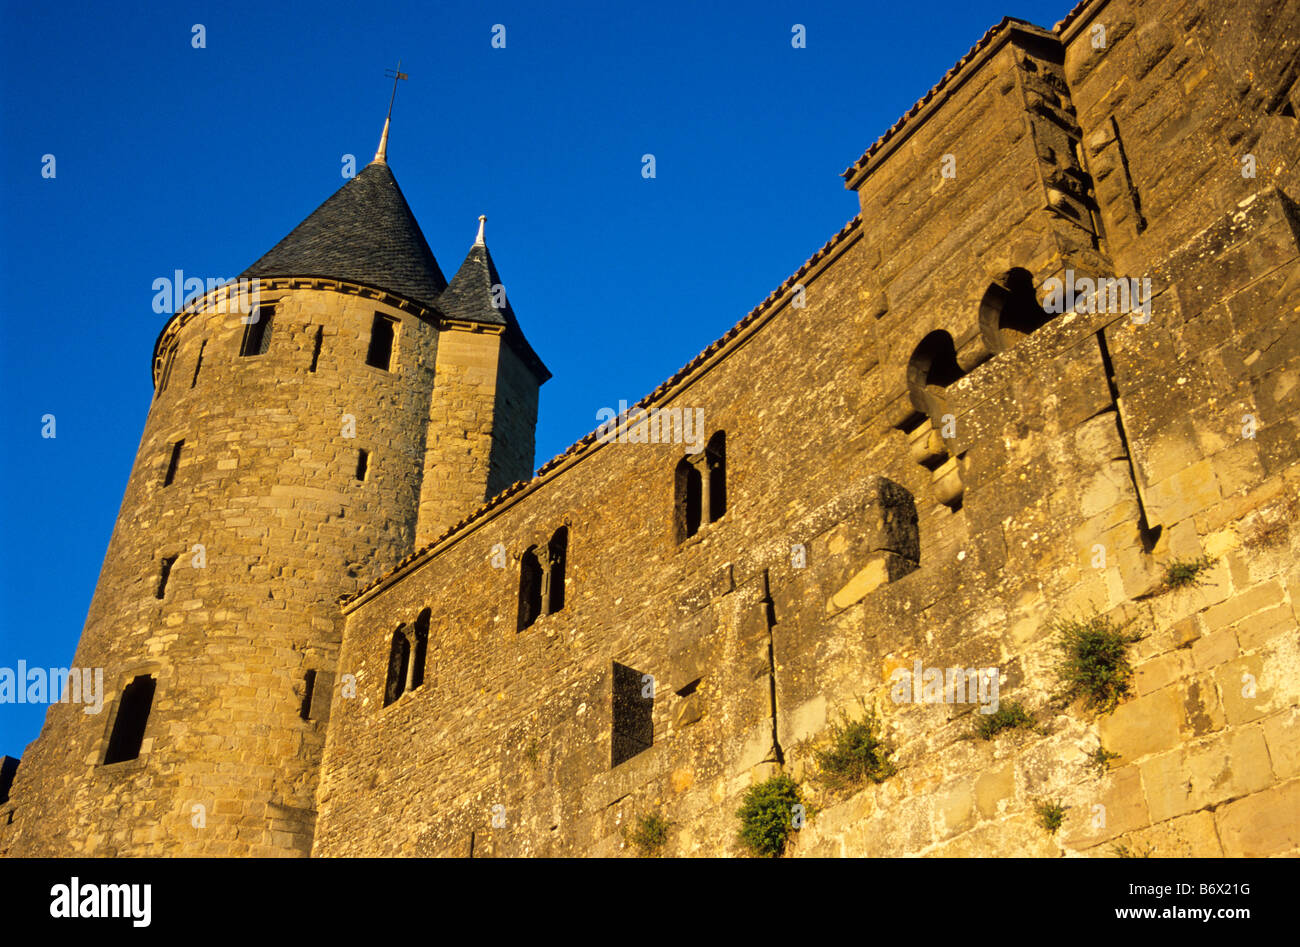 Le Château au coucher du soleil, Carcassonne, Aude, France Banque D'Images